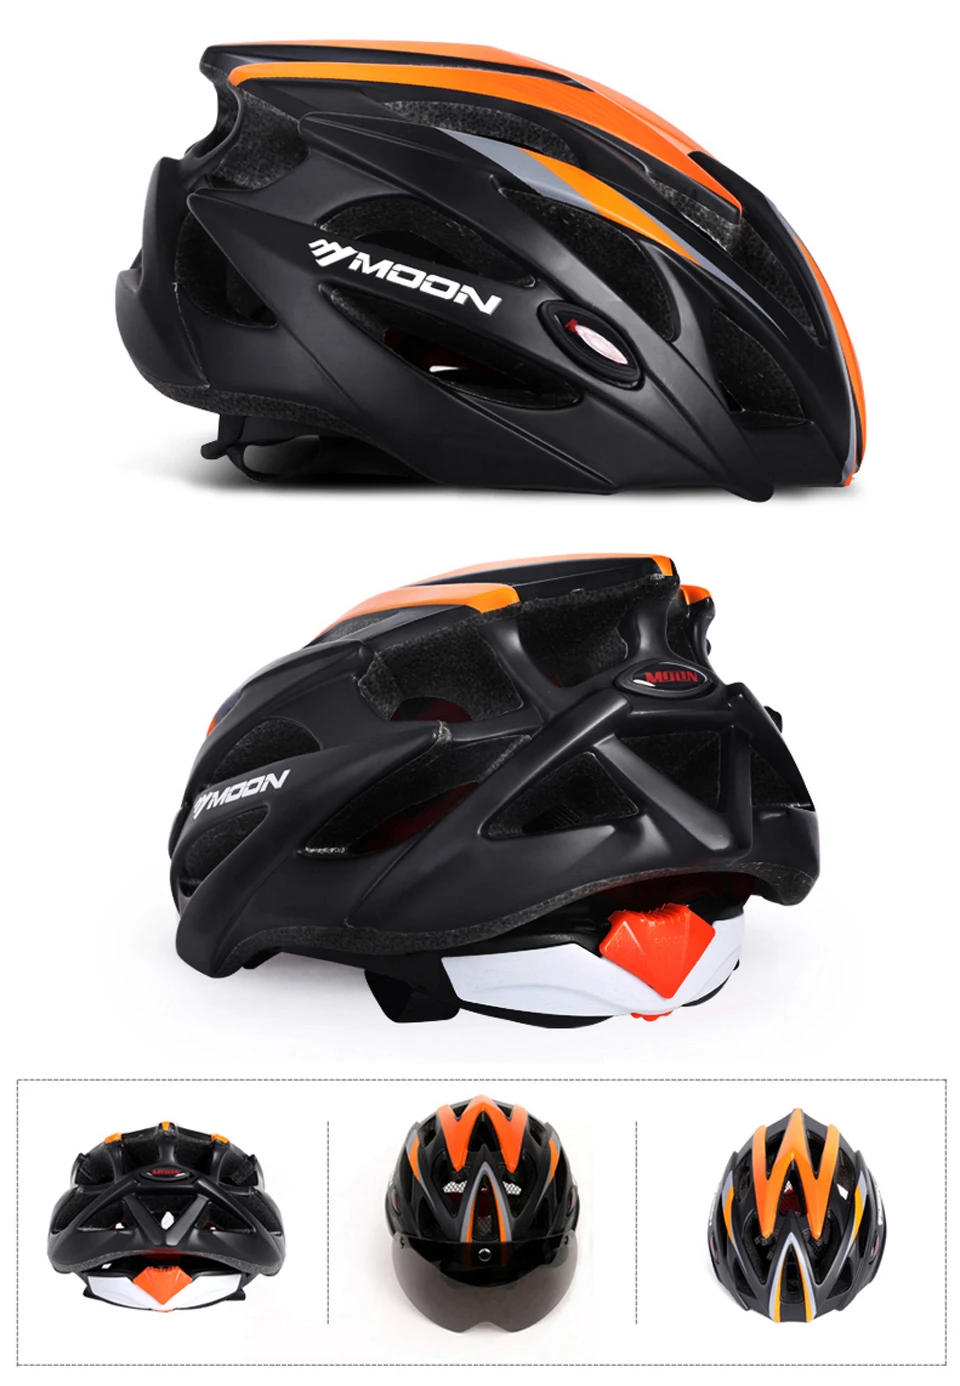 MOON г 275 г Магнитные очки велосипедный шлем ультралегкий велосипедный шлем с объективом в-молд велосипедный шлем 25 Вентиляционные отверстия